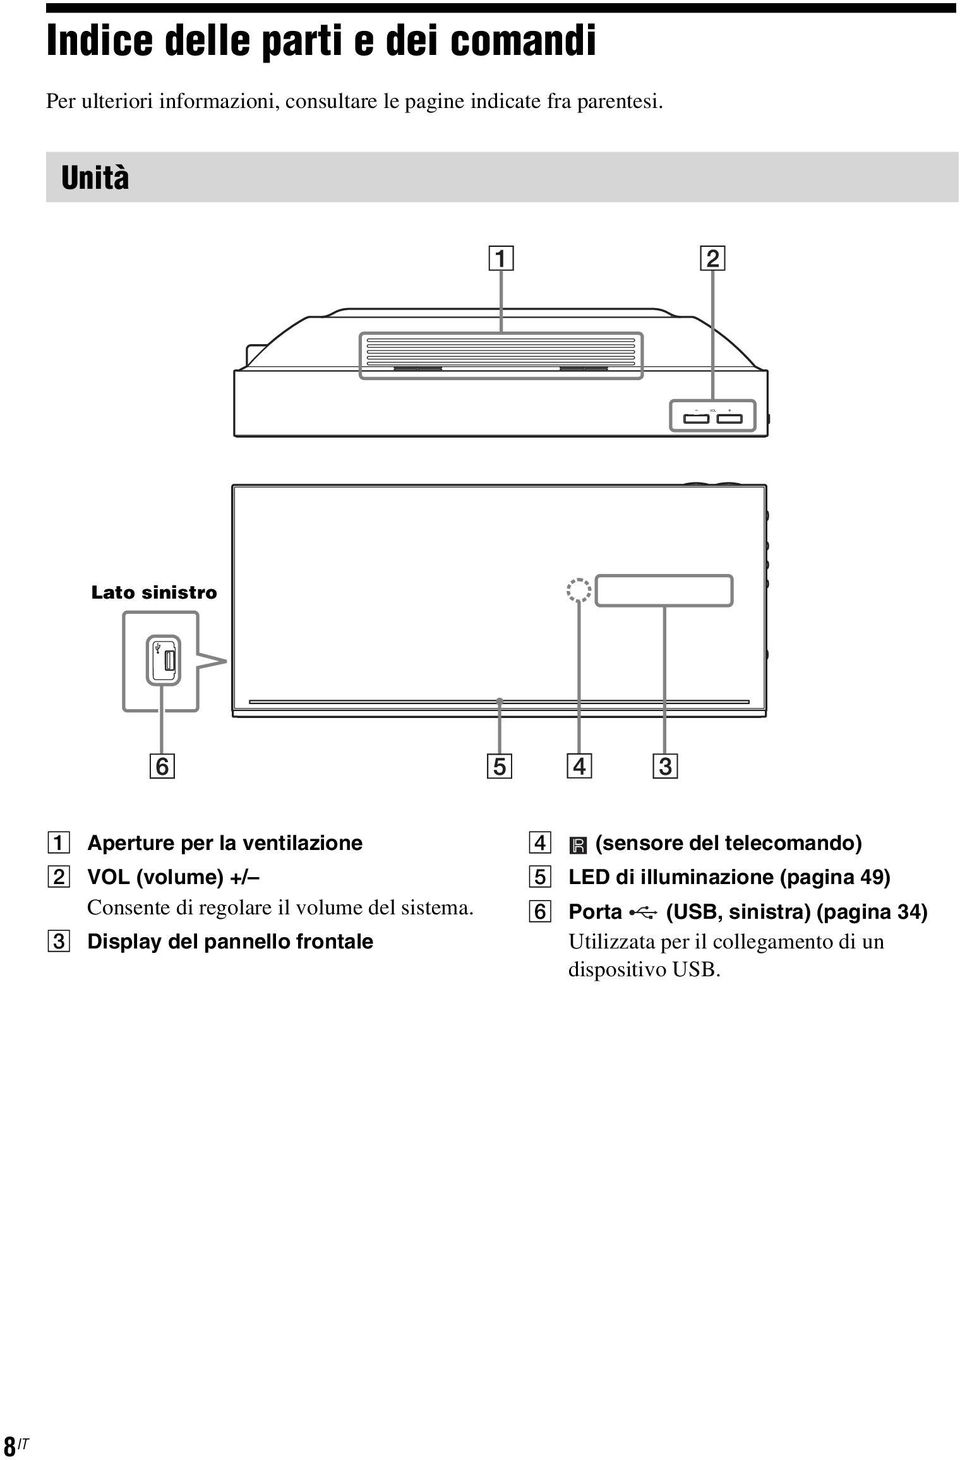 Unità Lato sinistro A Aperture per la ventilazione B VOL (volume) +/ Consente di regolare il volume